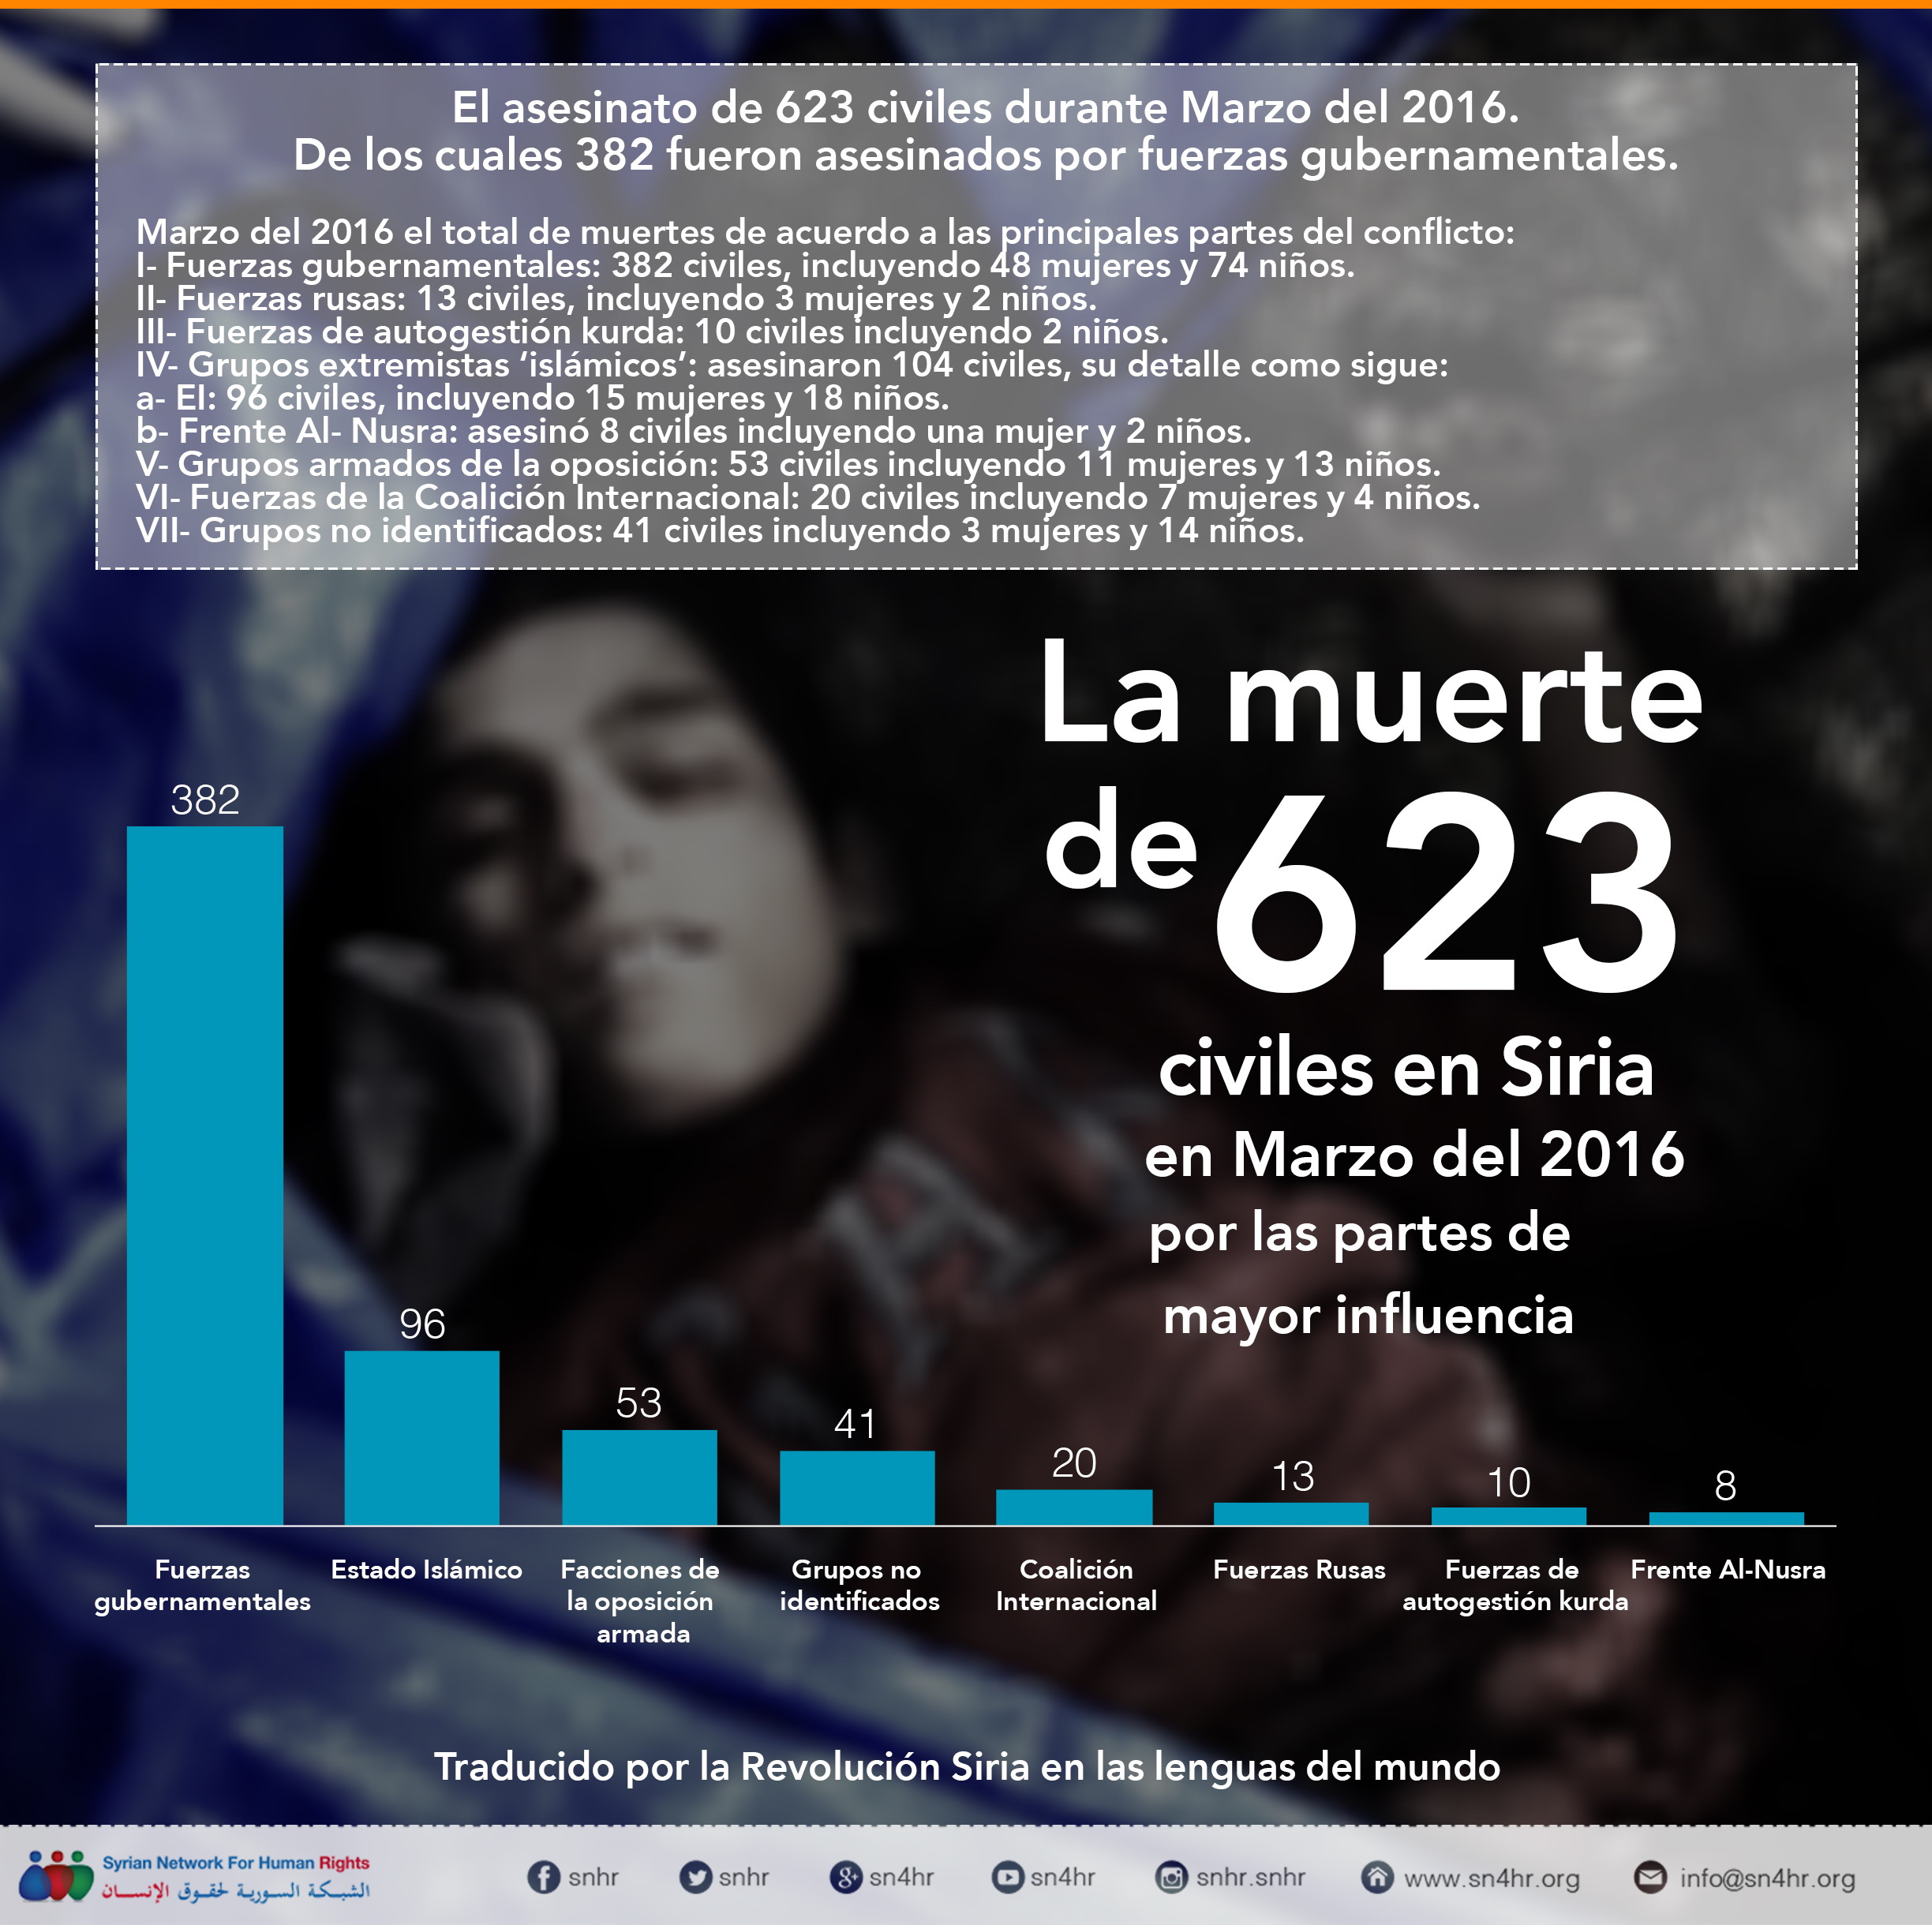 El asesinato de 623 civiles durante Marzo del 2016